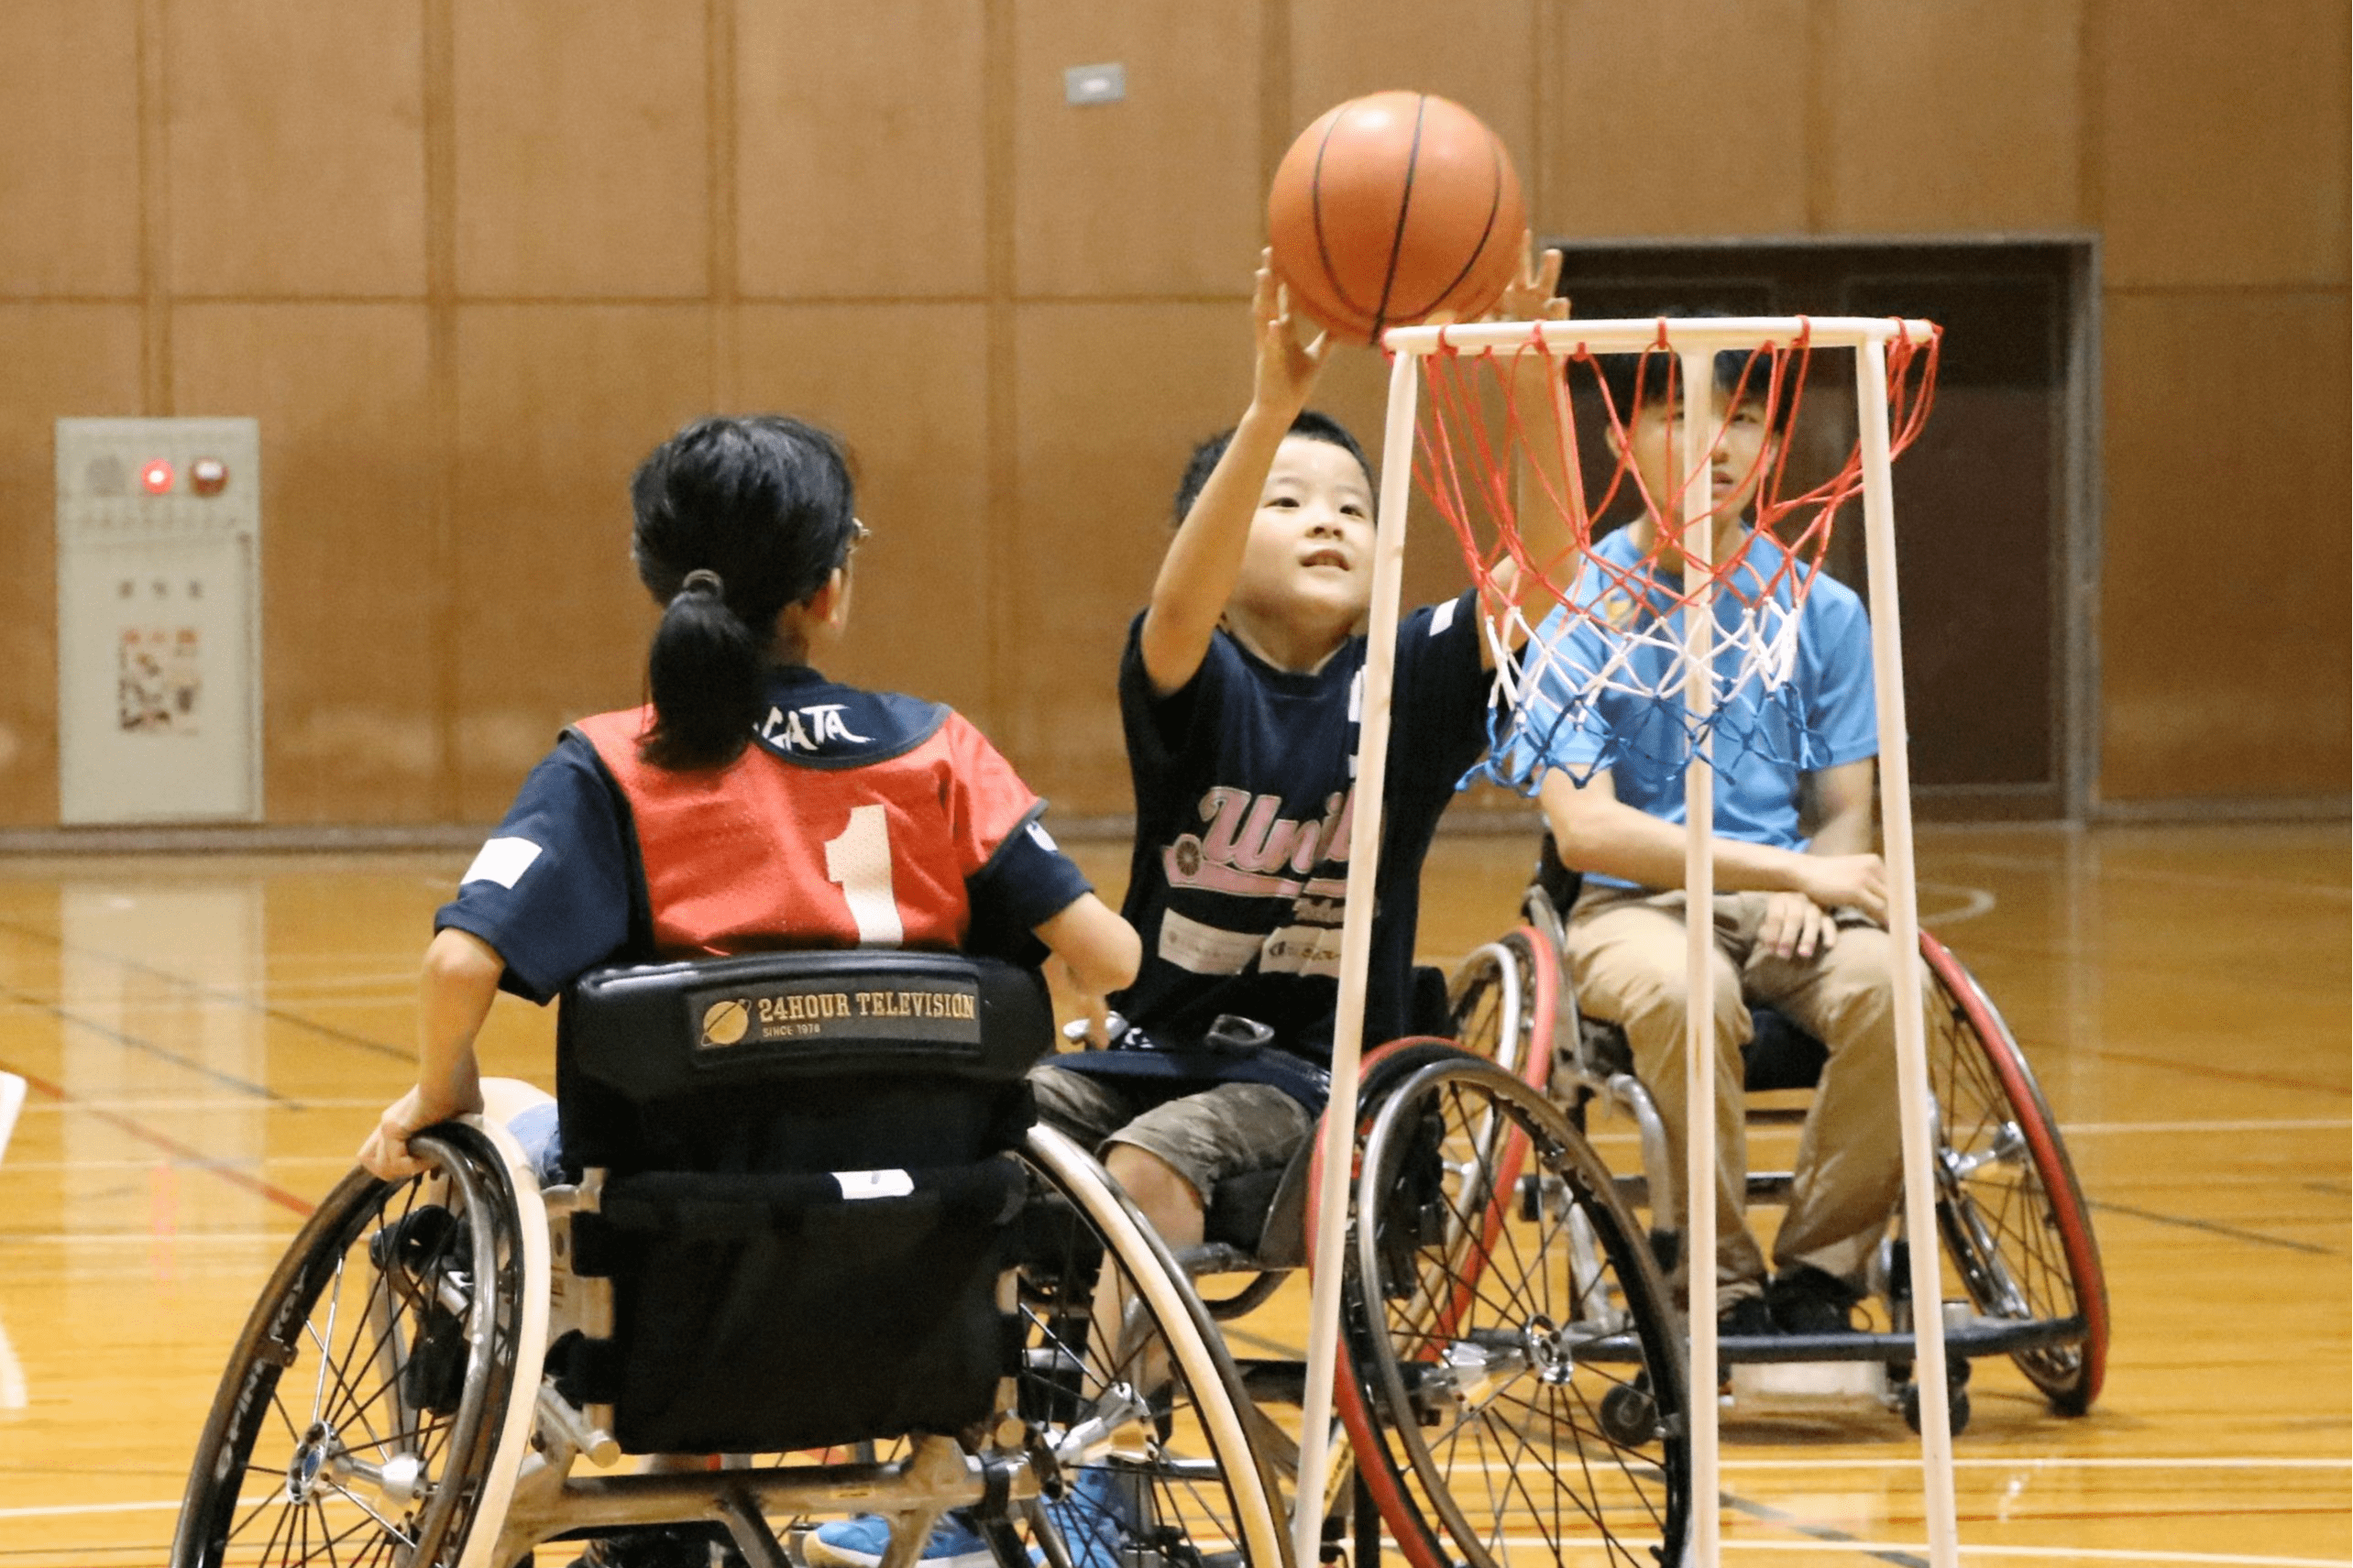 パラスポーツ普及へ新潟県内で続く試行錯誤 車椅子バスケ 十日町ユニティ のベクトルとは 新潟日報デジタルプラス